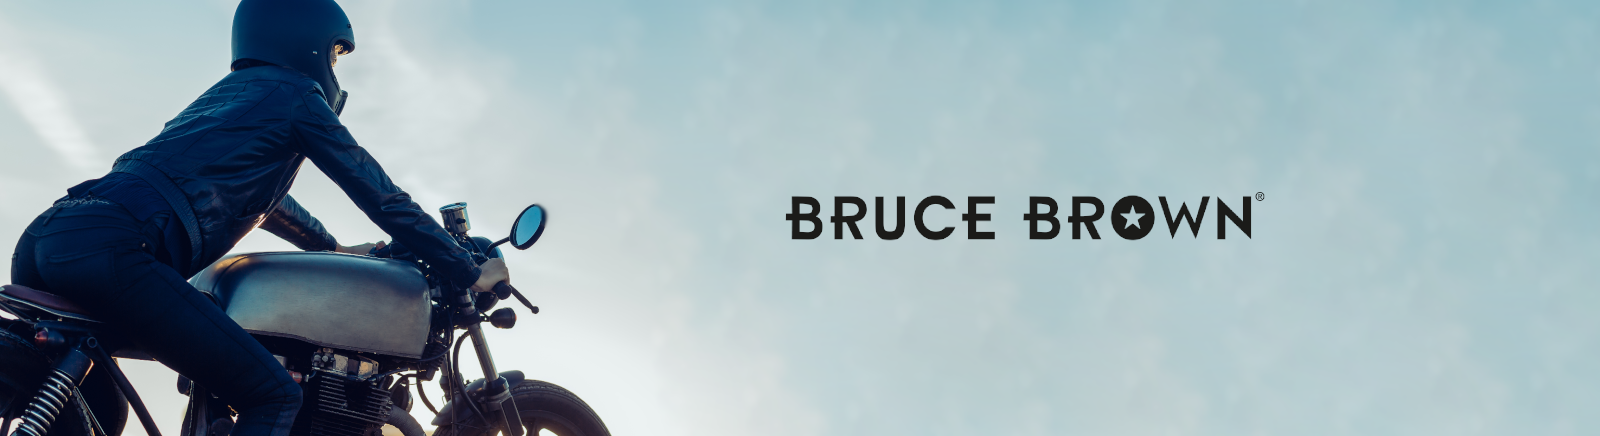 Bruce Brown Kinderschuhe online entdecken im Juppen Shop